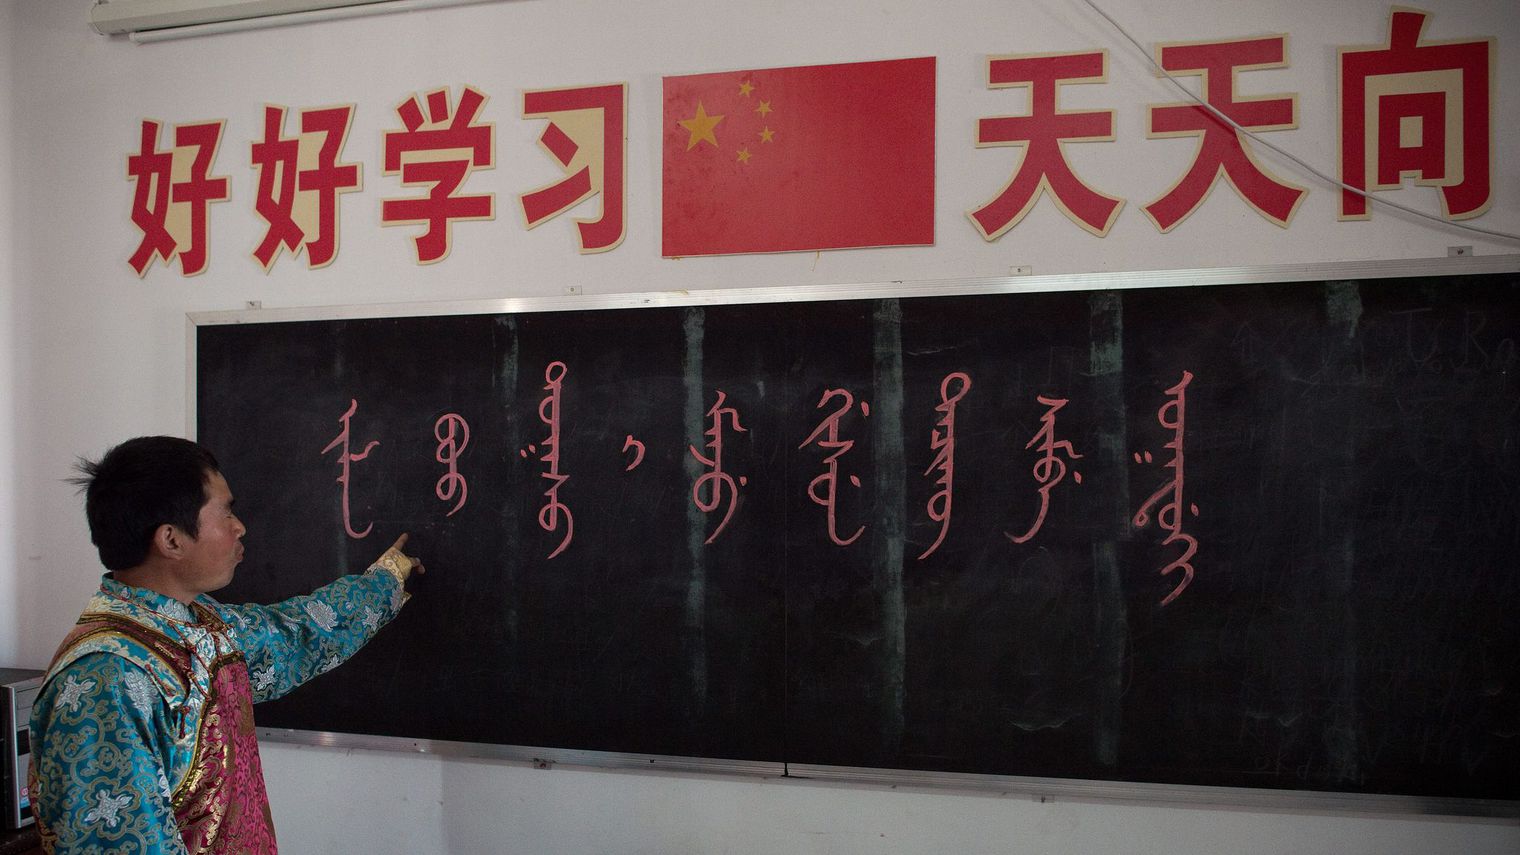 Маньчжурский язык. Китайский язык. Путунхуа в китайском языке. Кабинет китайского языка в школе.